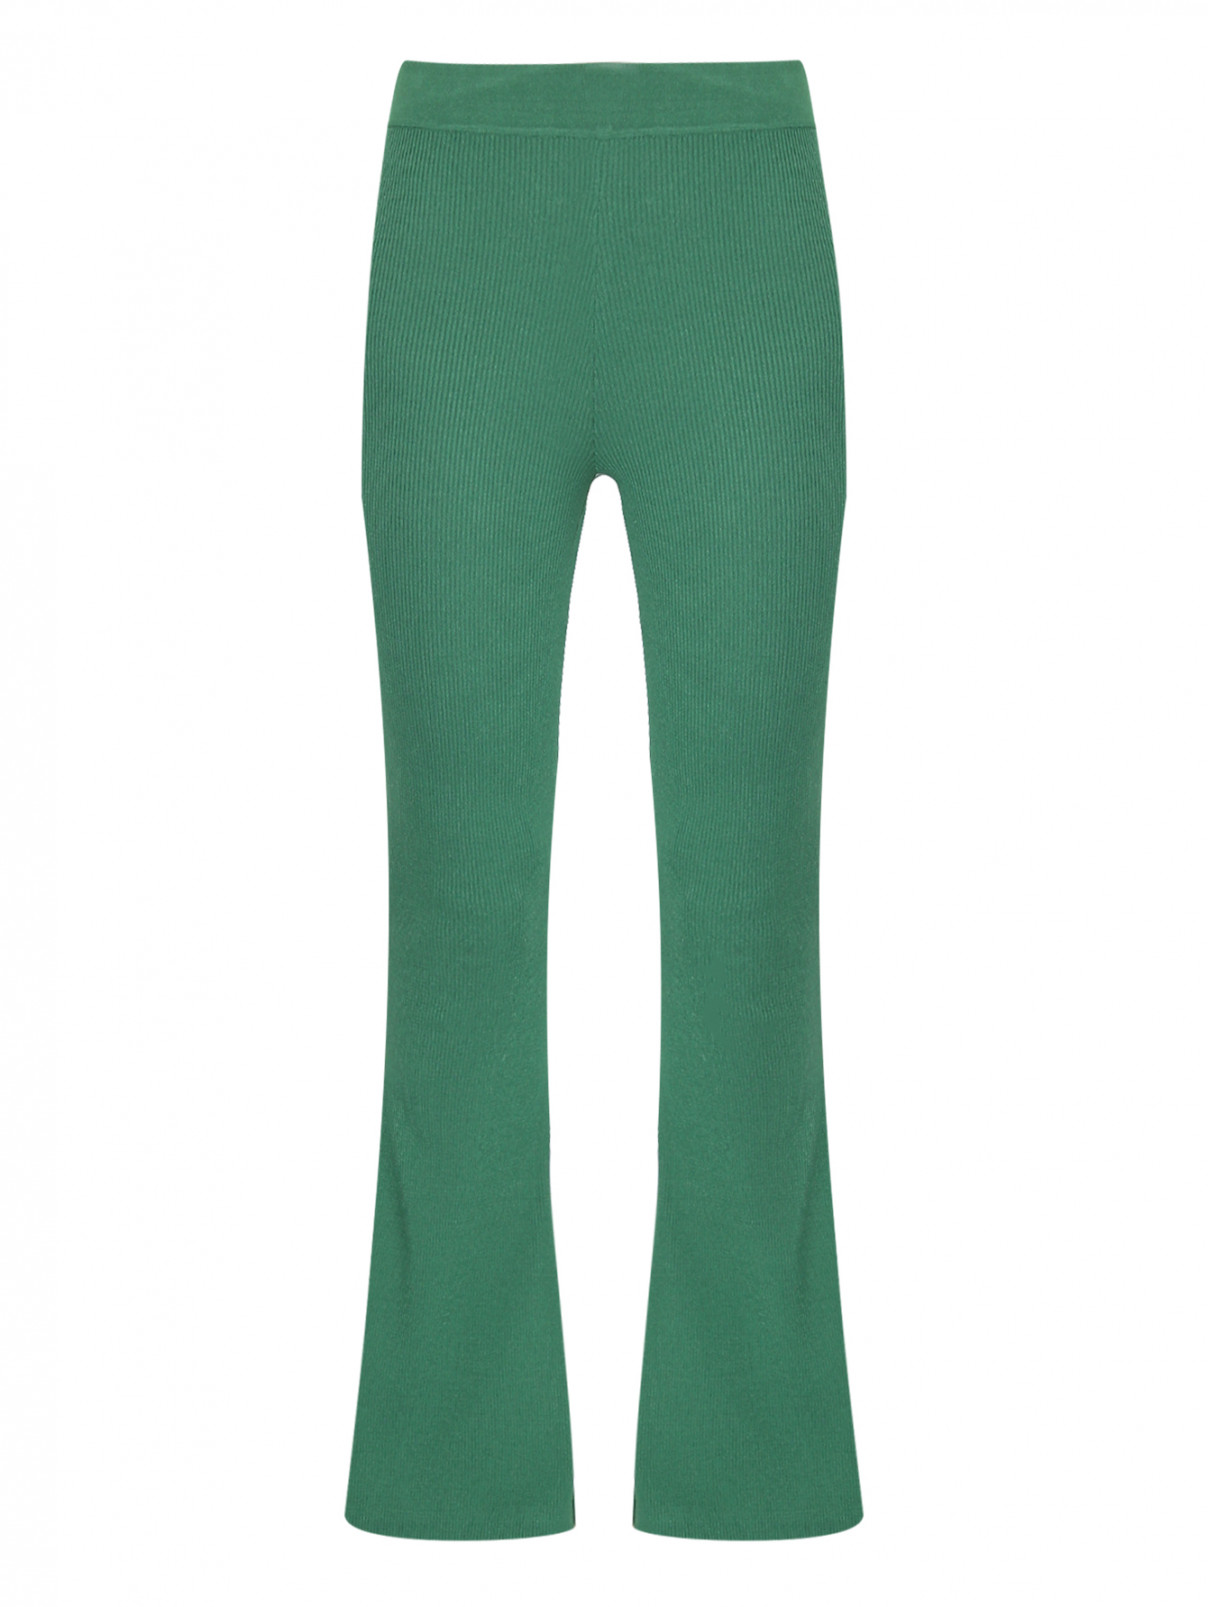 Трикотажные брюки расклешенного кроя Essentiel Antwerp  –  Общий вид  – Цвет:  Зеленый